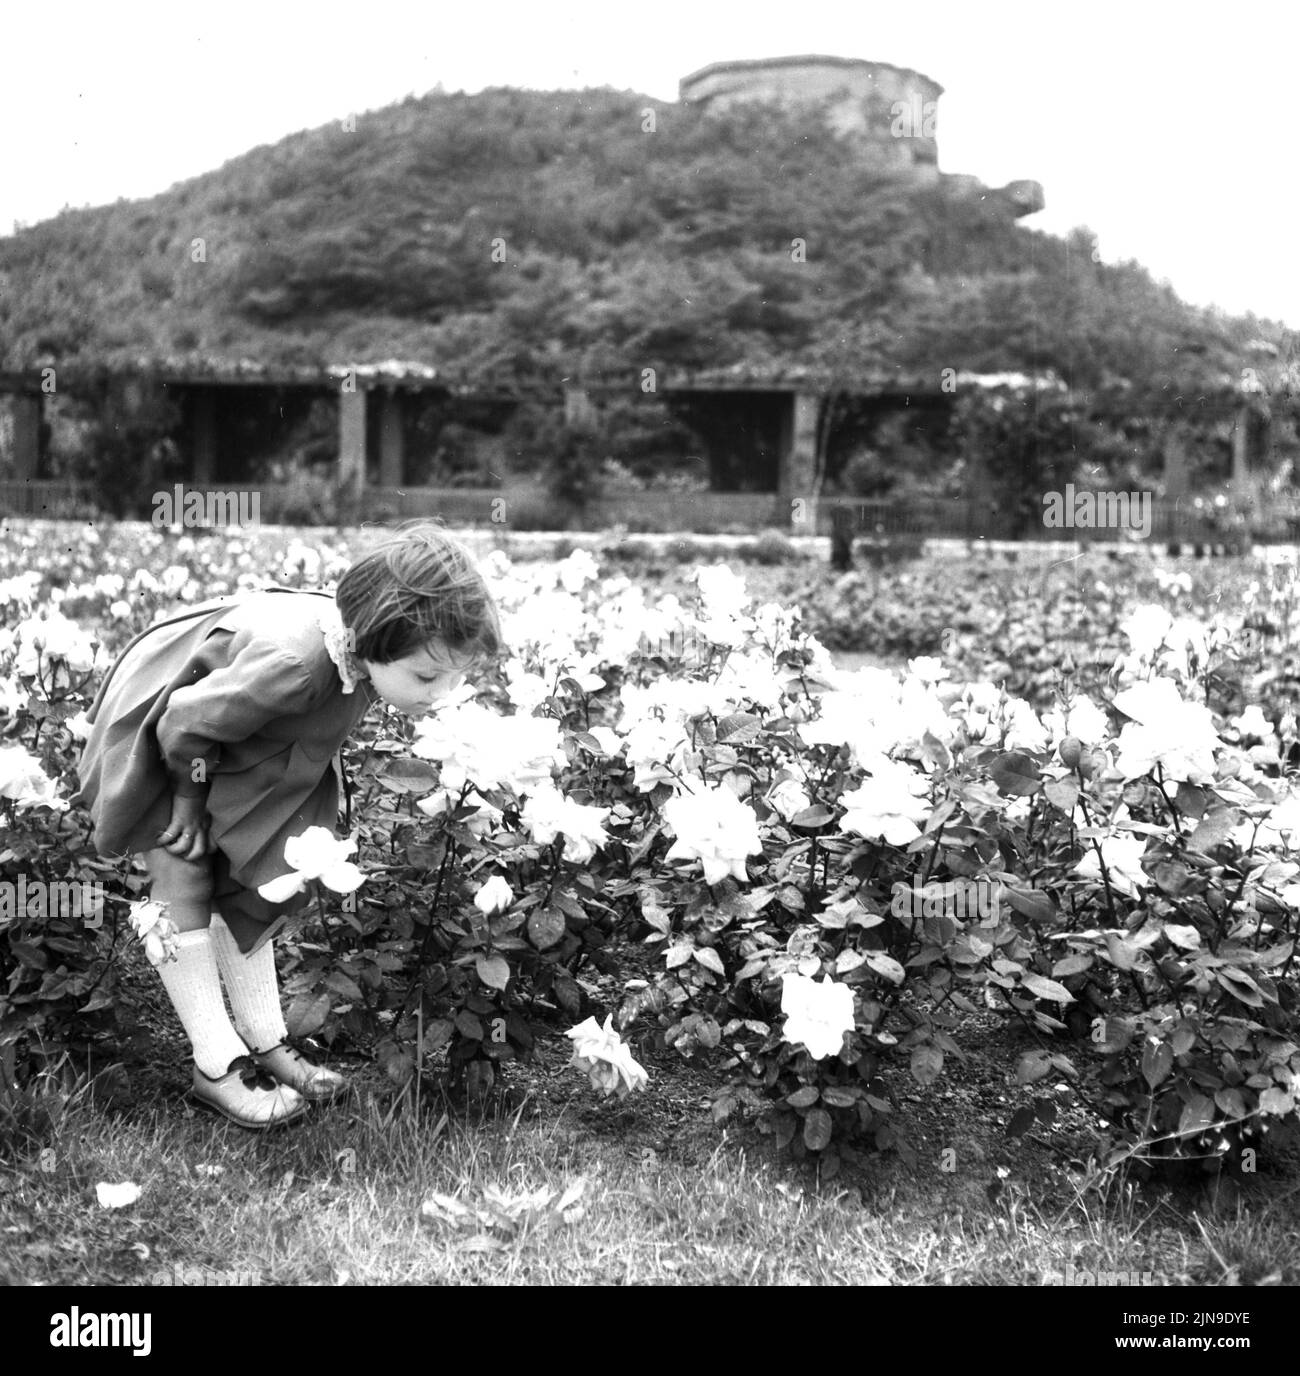 Original-Bildunterschrift: Die Rosen stehen in voller Blüte in der Parkanlage am Fuße des Bunkerbergs am Humboldthain, Berlin, Deutschland 1955. Stock Photo